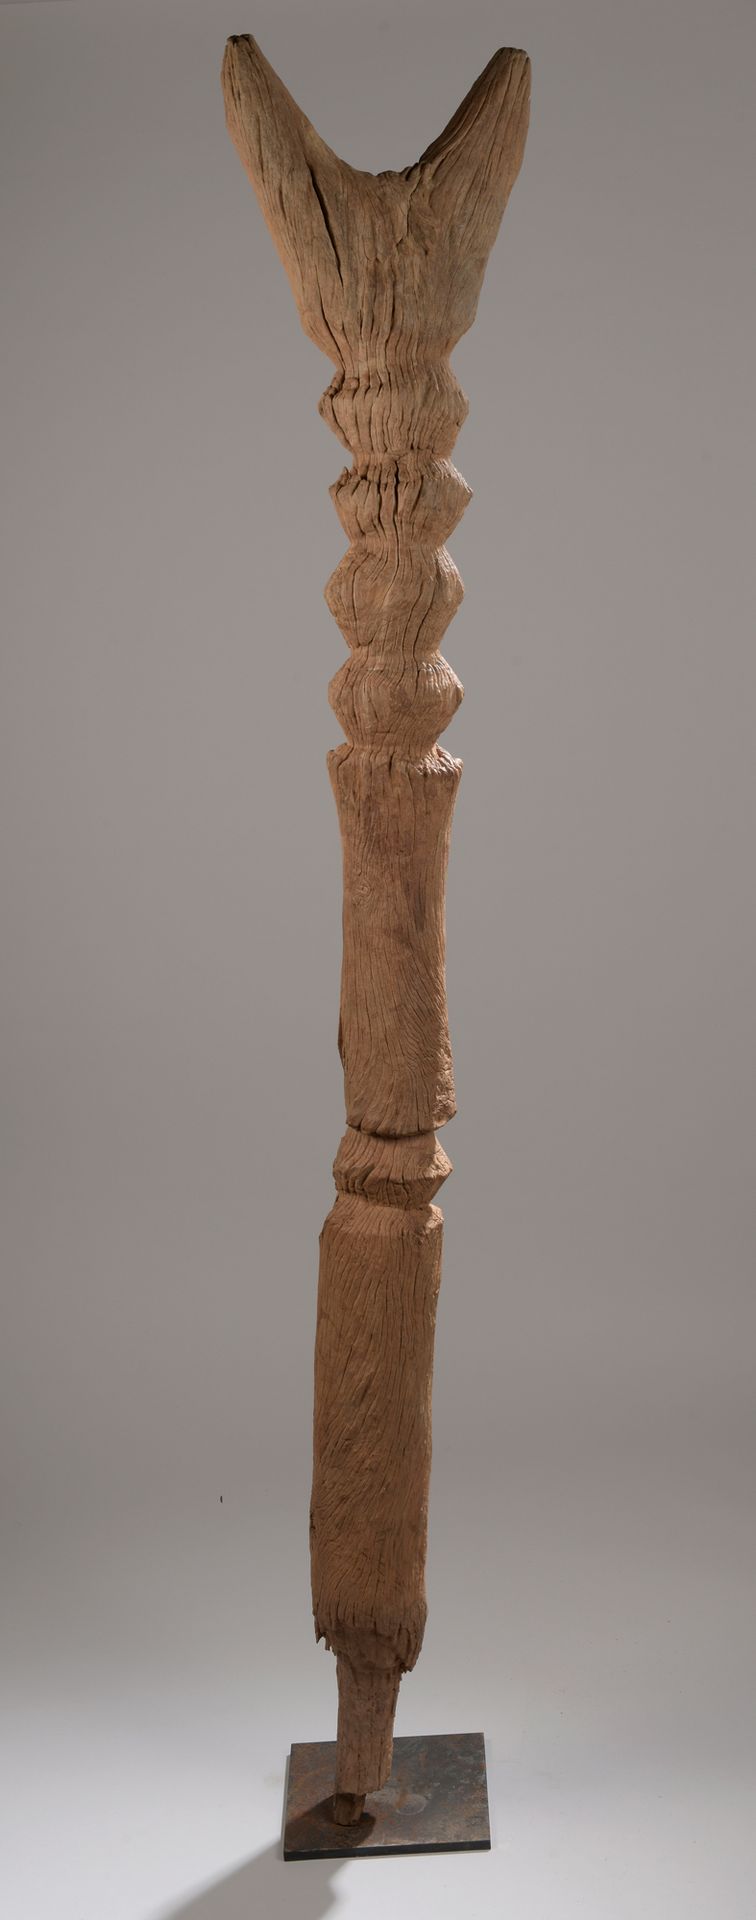 Null MOSSI POT, Burkina Faso

Legno con patina naturale.

H. 168,5 cm

Post segn&hellip;